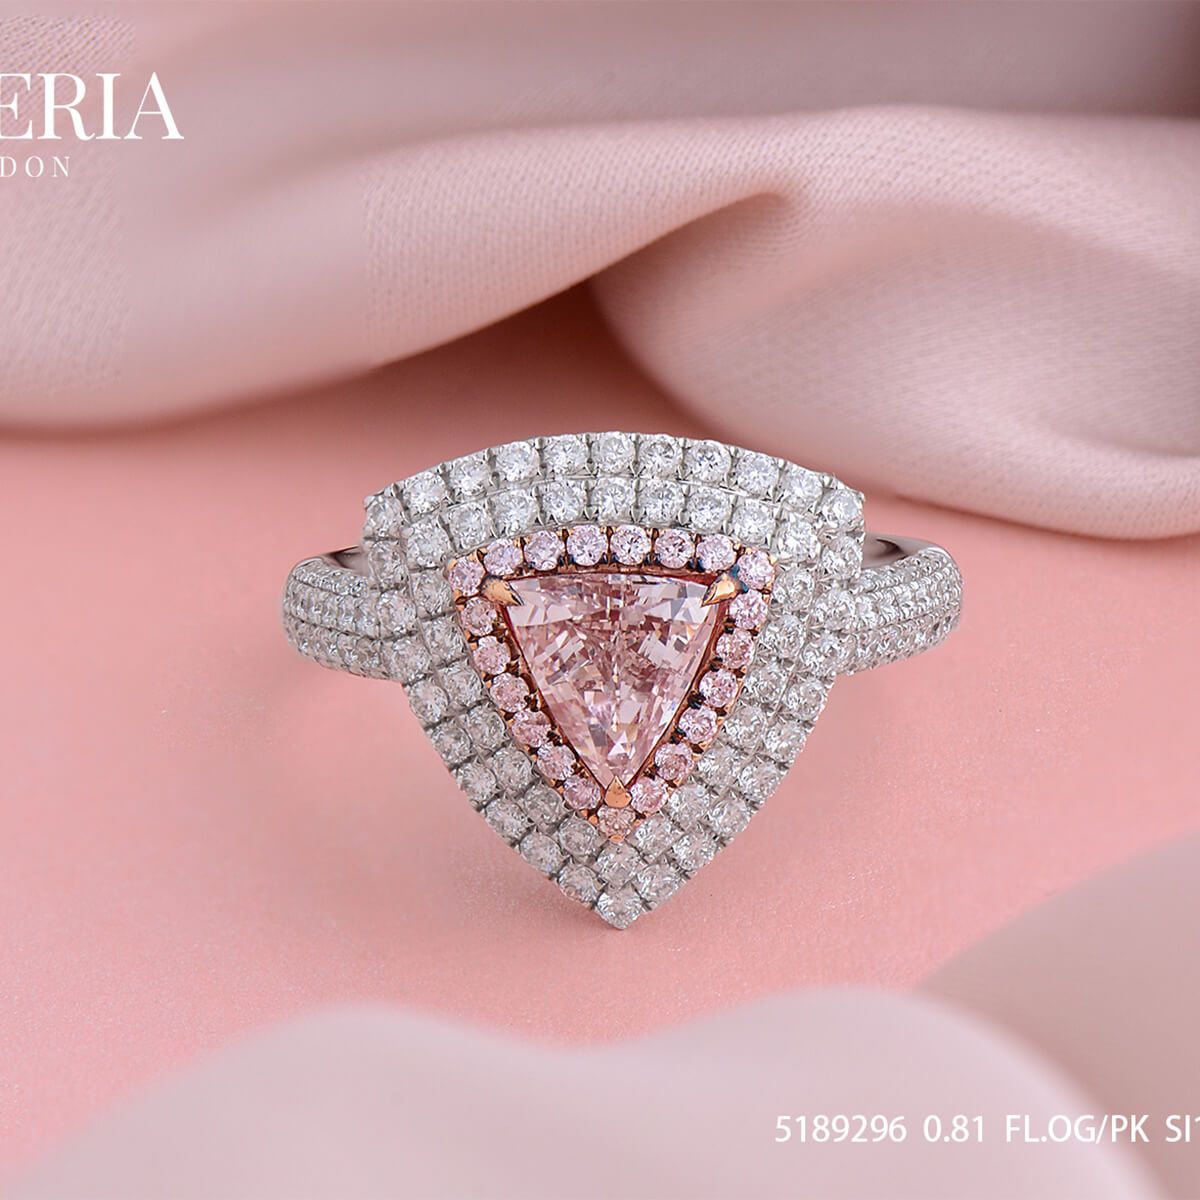 浅 呈橙色的 粉色 钻石 戒指, 0.81 重量 (1.76 克拉 总重), 三角形 形状, GIA 认证, 15281496